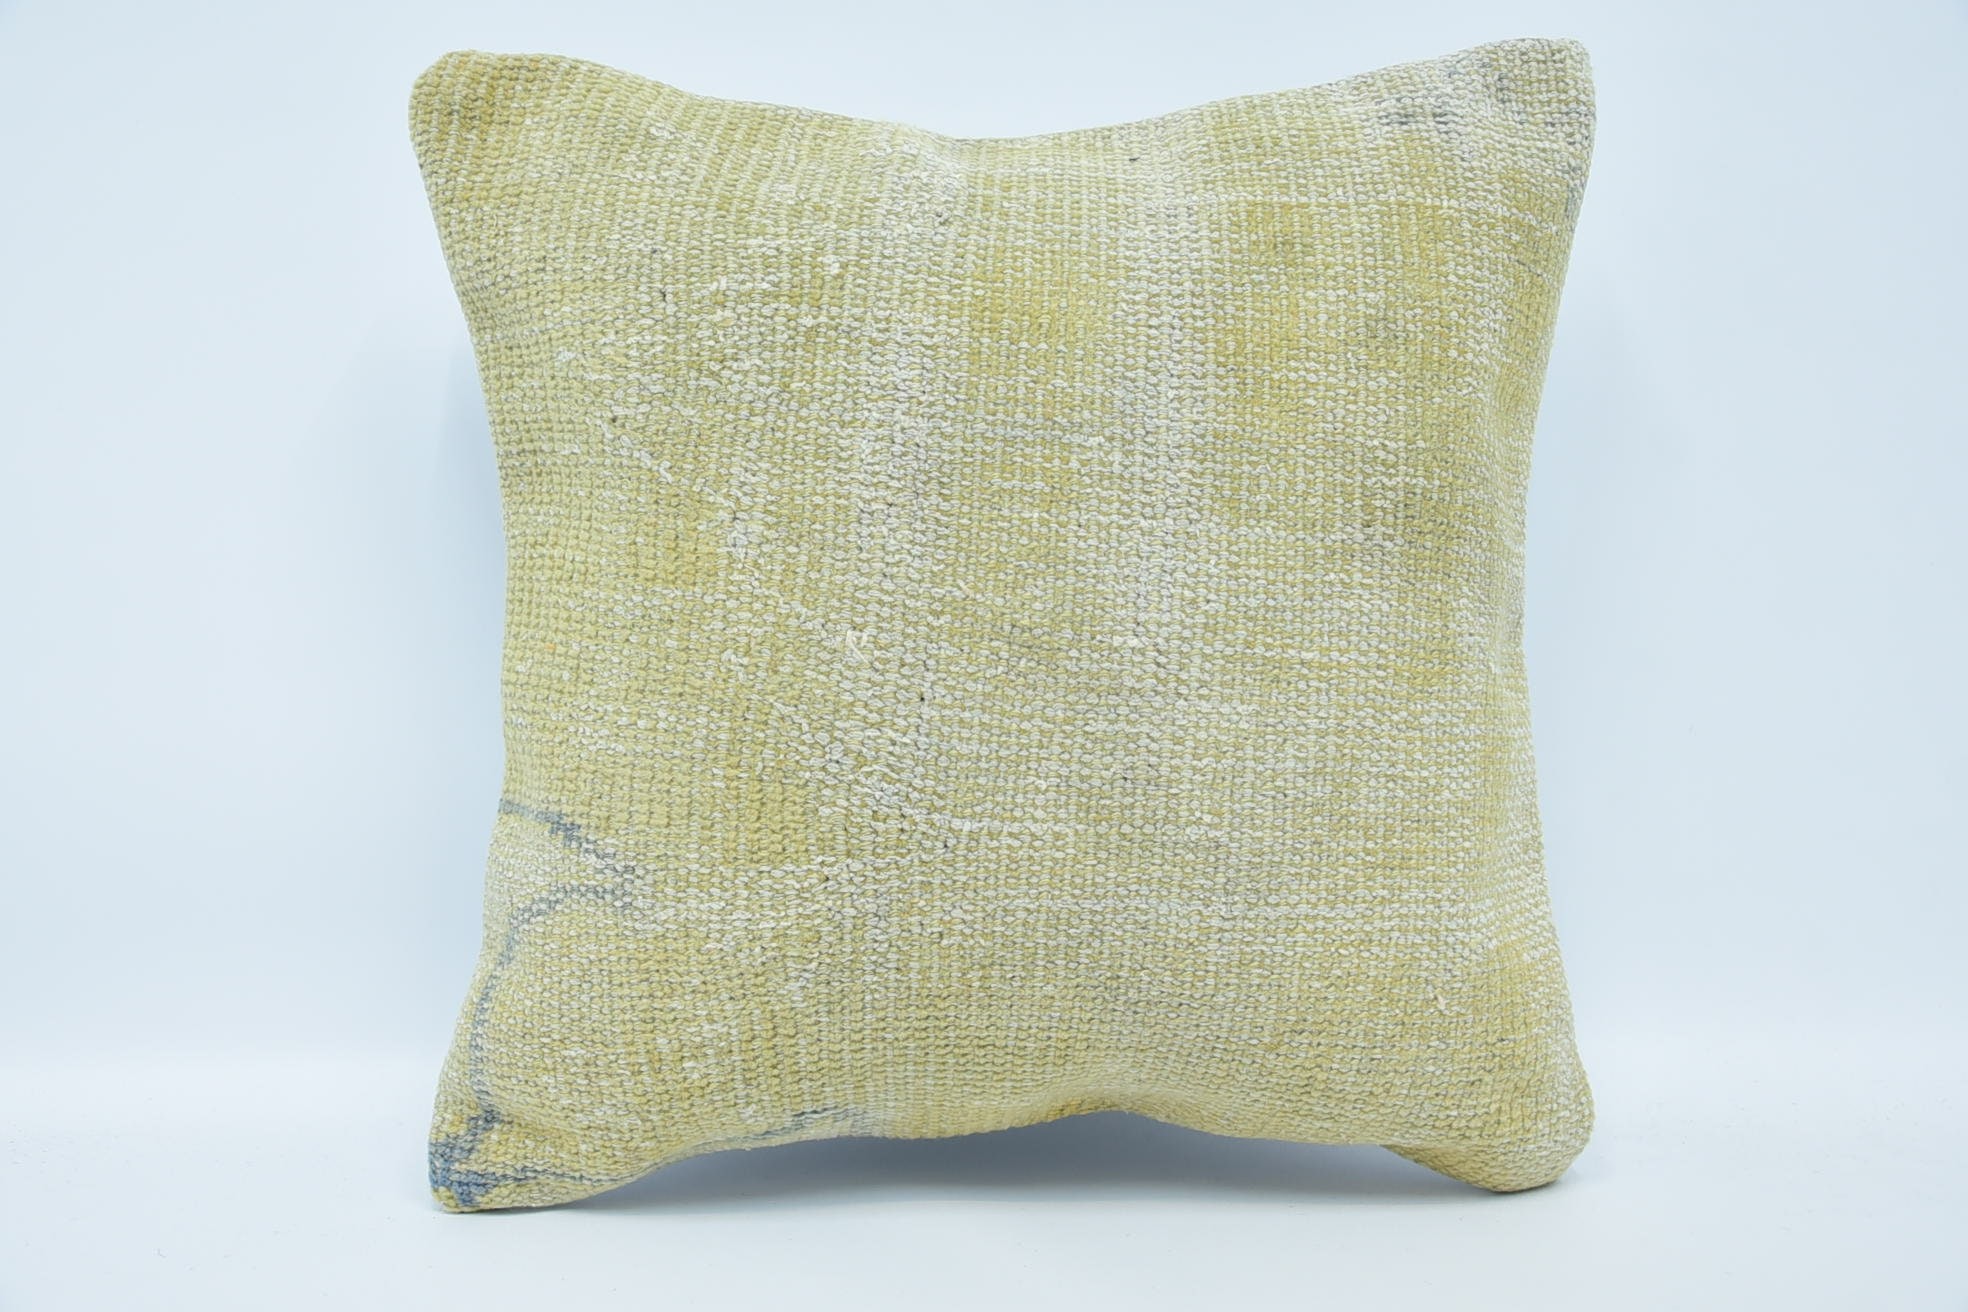 Cotton Pillow, Oriental Cushion Case, Antique Pillows, Kilim Rug Pillow, Handmade Kilim Cushion, 18"x18" Beige Cushion Case, Gift Pillow